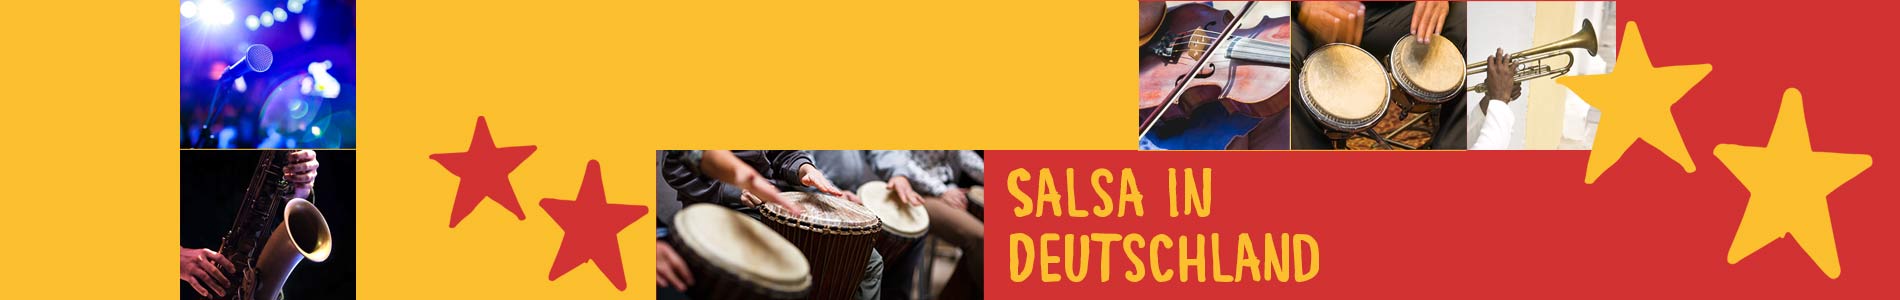 Salsa in Dausenau – Salsa lernen und tanzen, Tanzkurse, Partys, Veranstaltungen